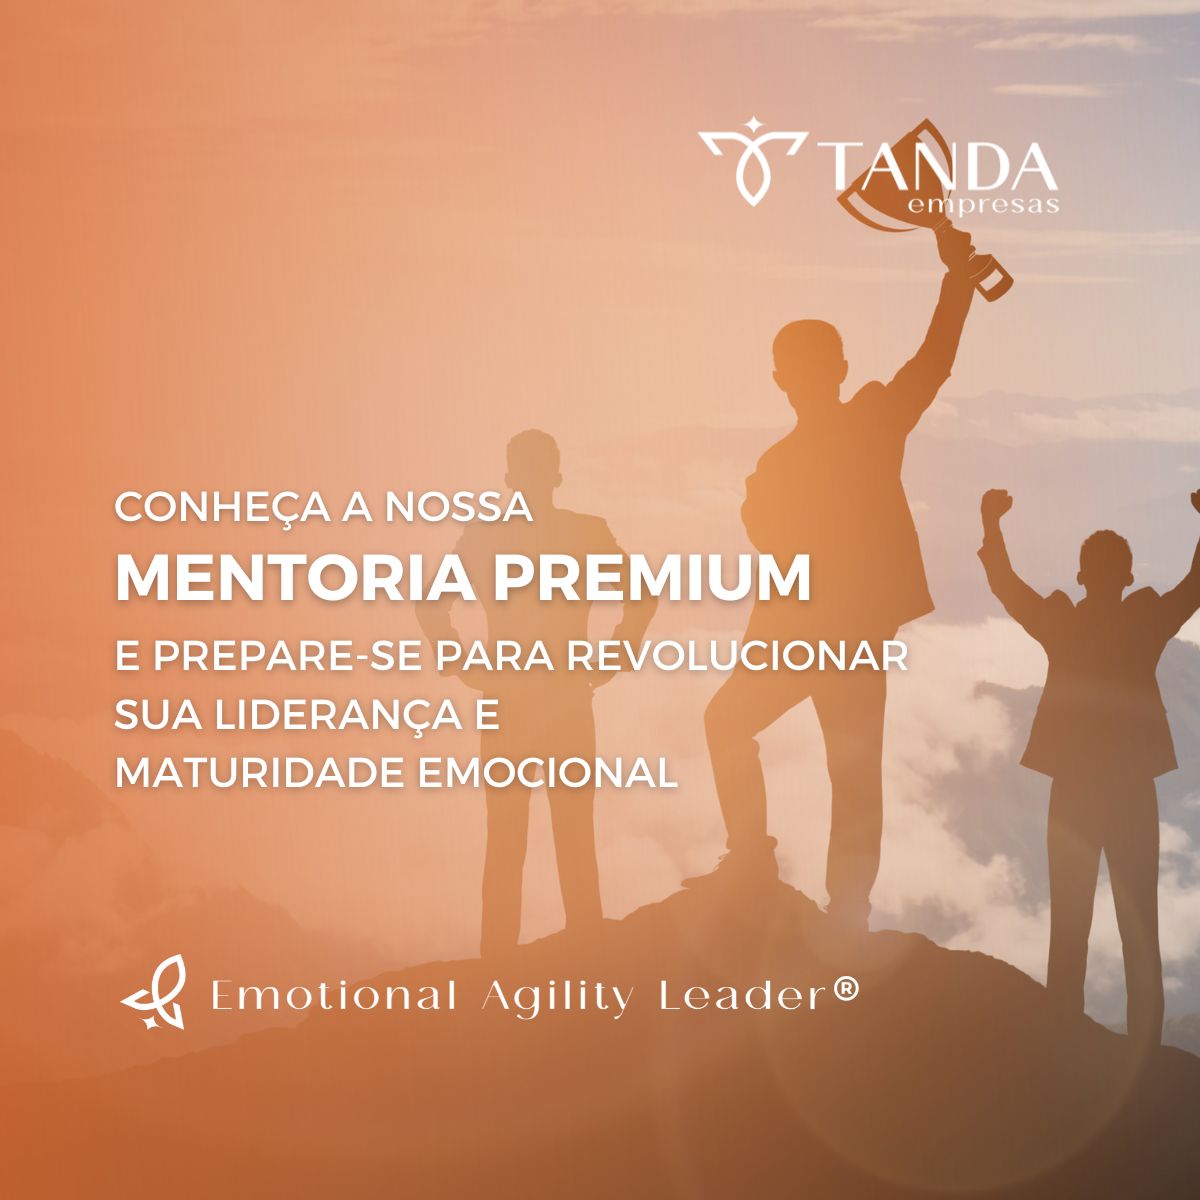 Mentoria Premium